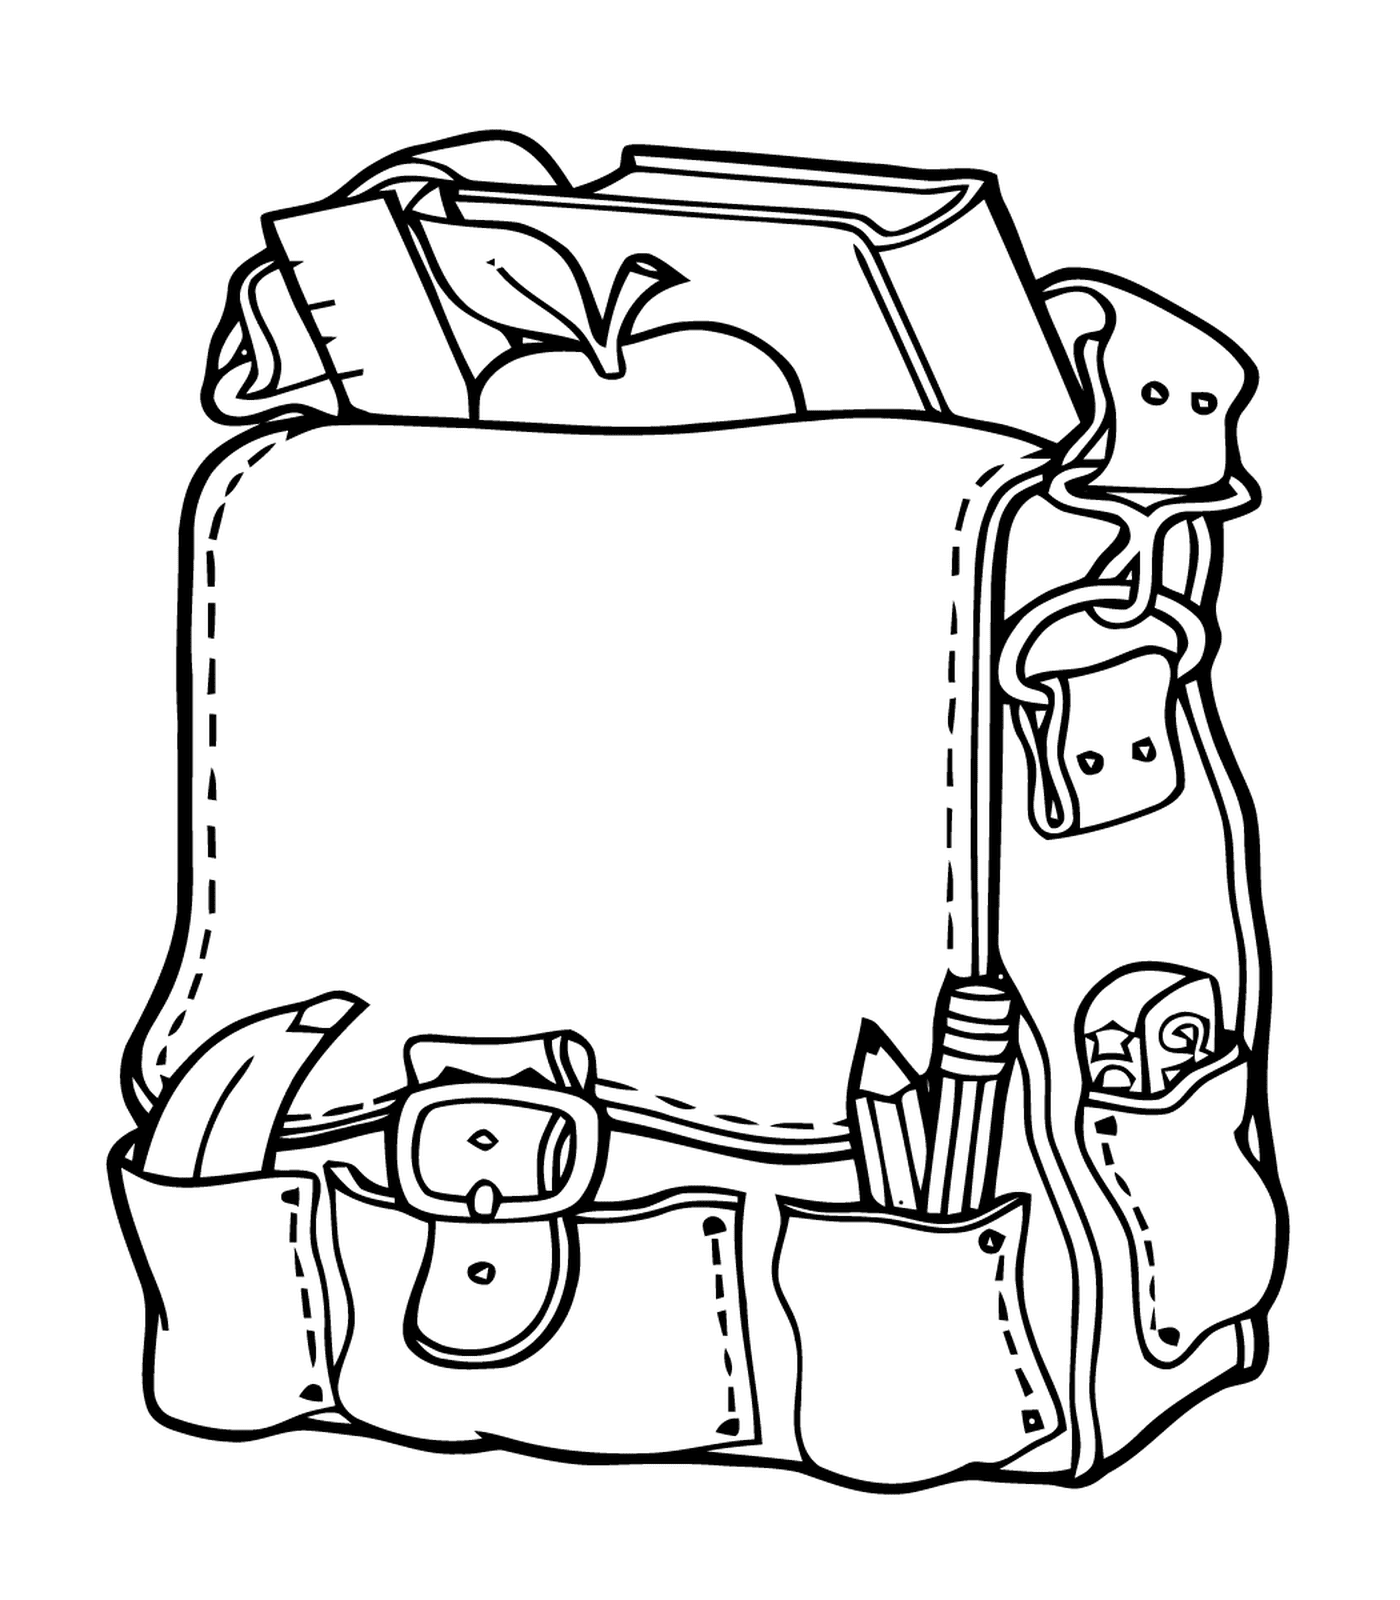  Ein offener Rucksack gefüllt mit Schulmaterial 